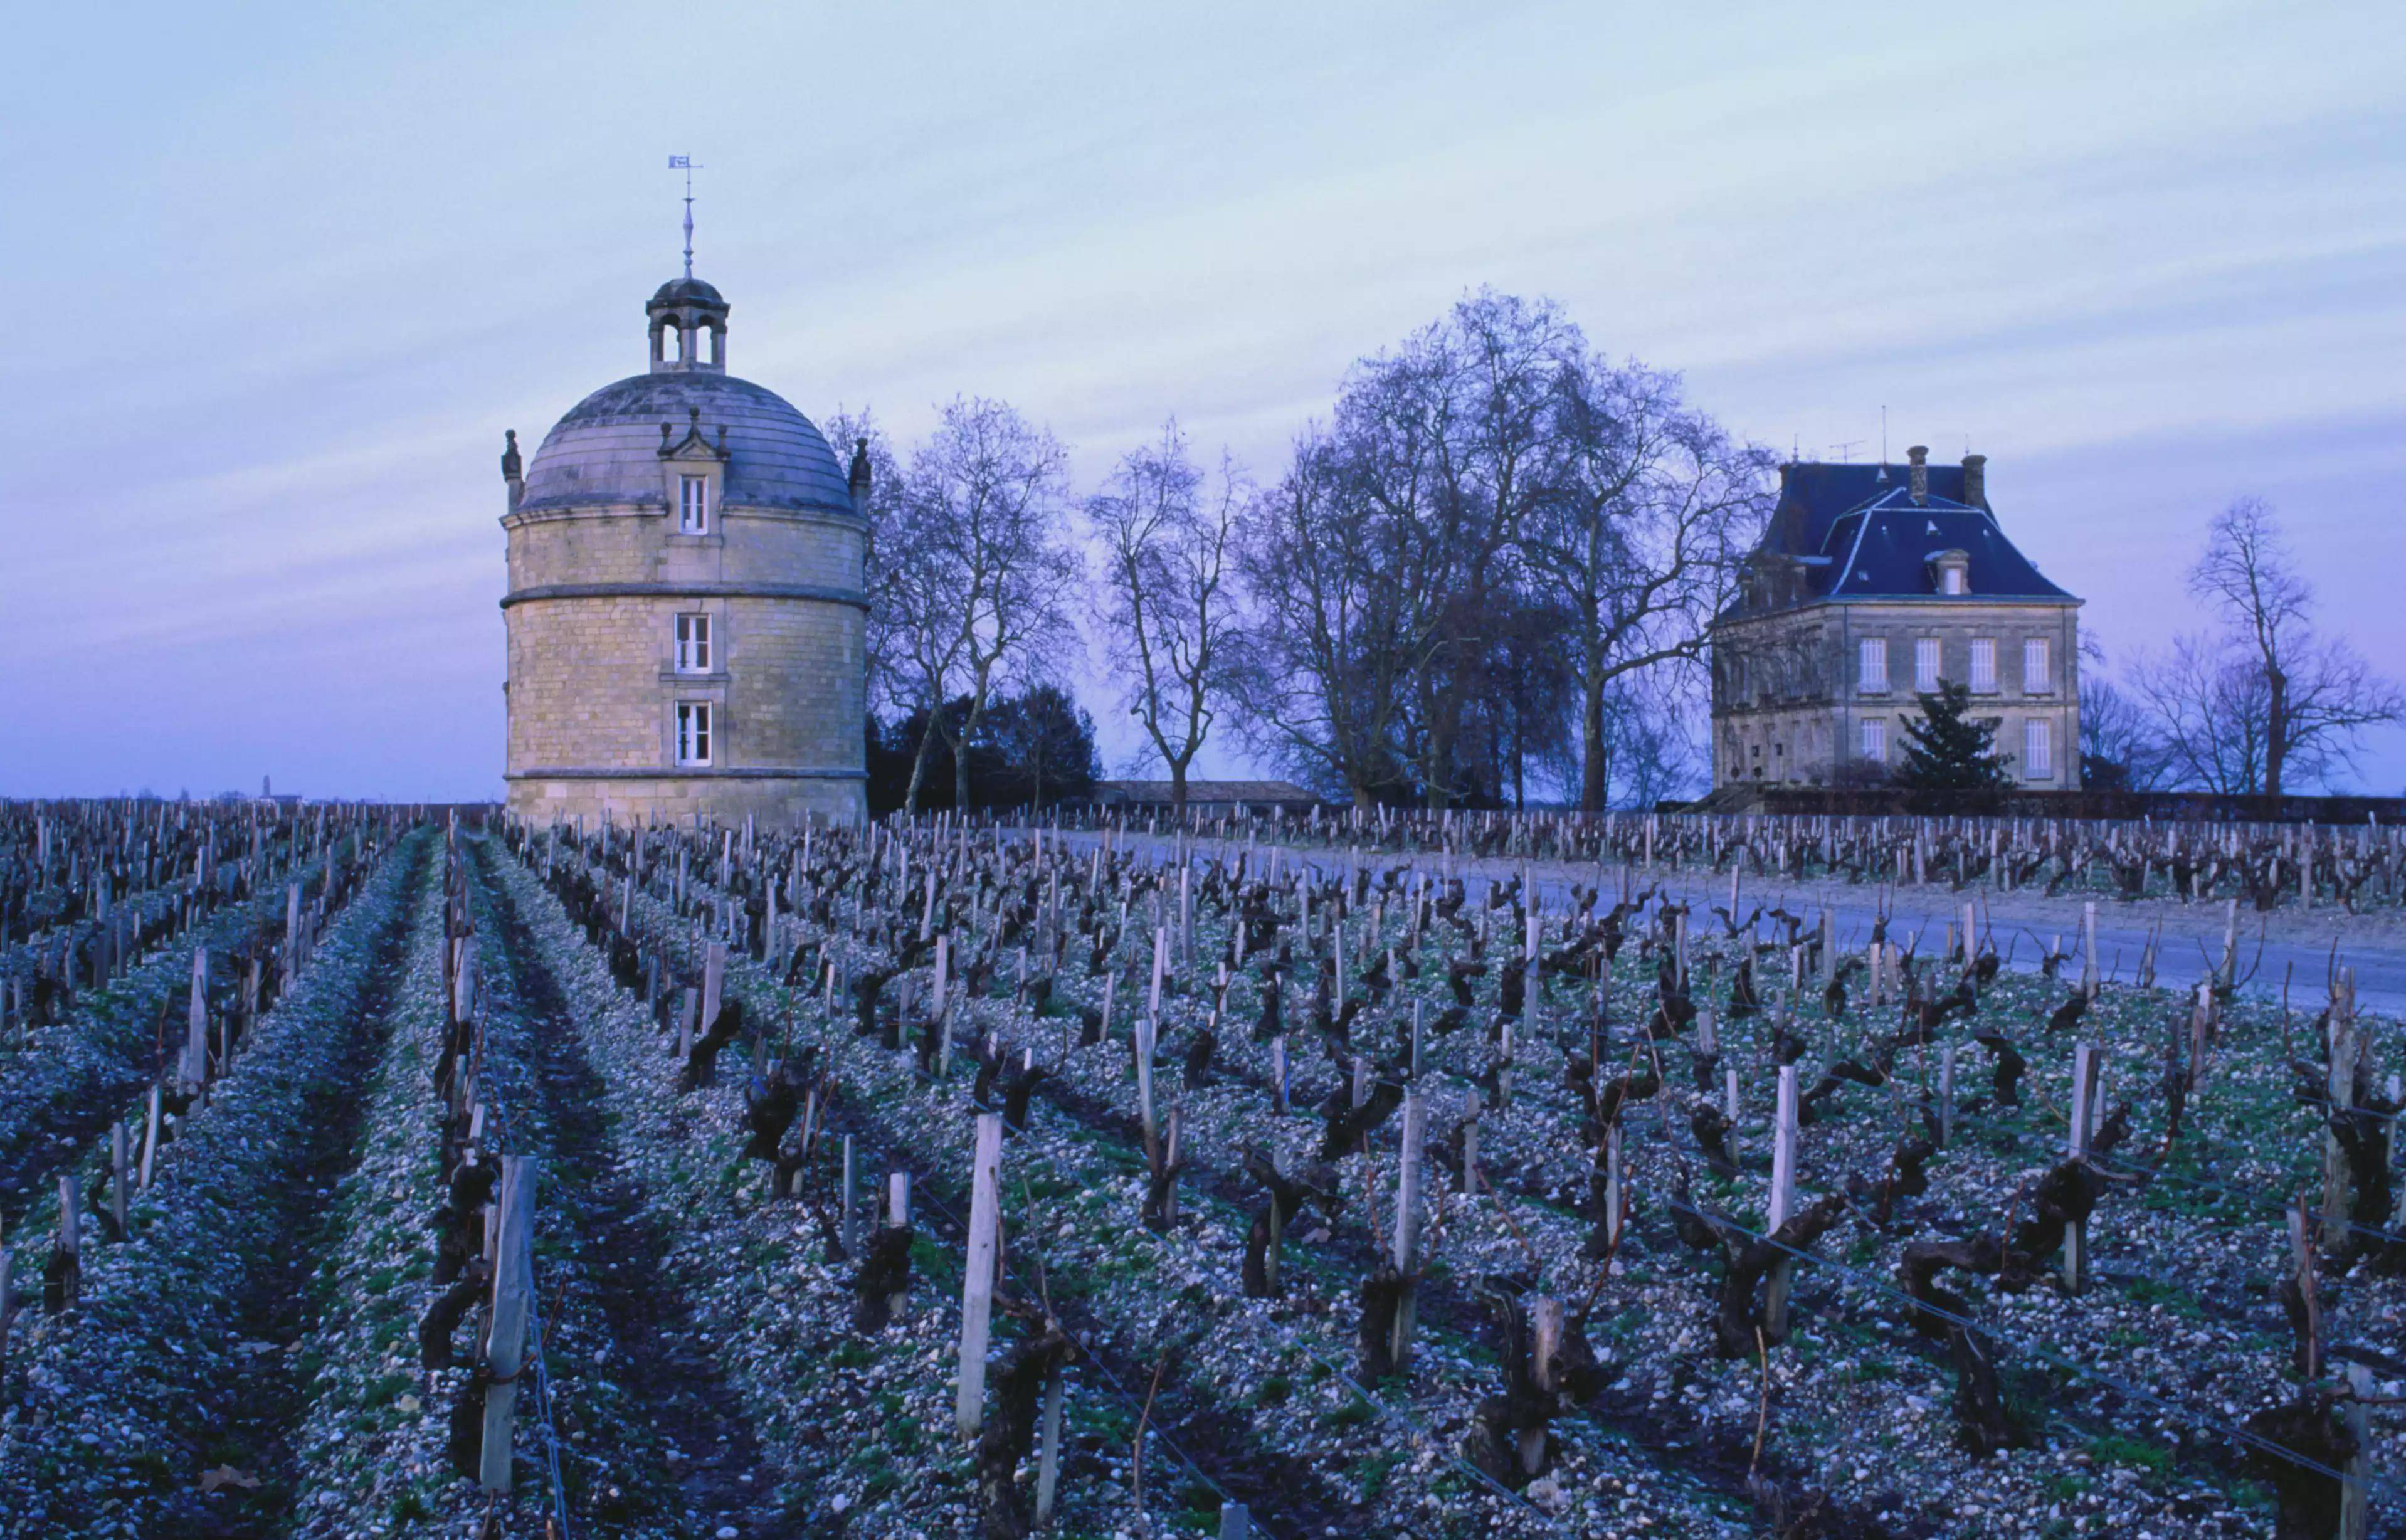 法国葡萄酒的十大产区 法国葡萄酒十大产区分布图